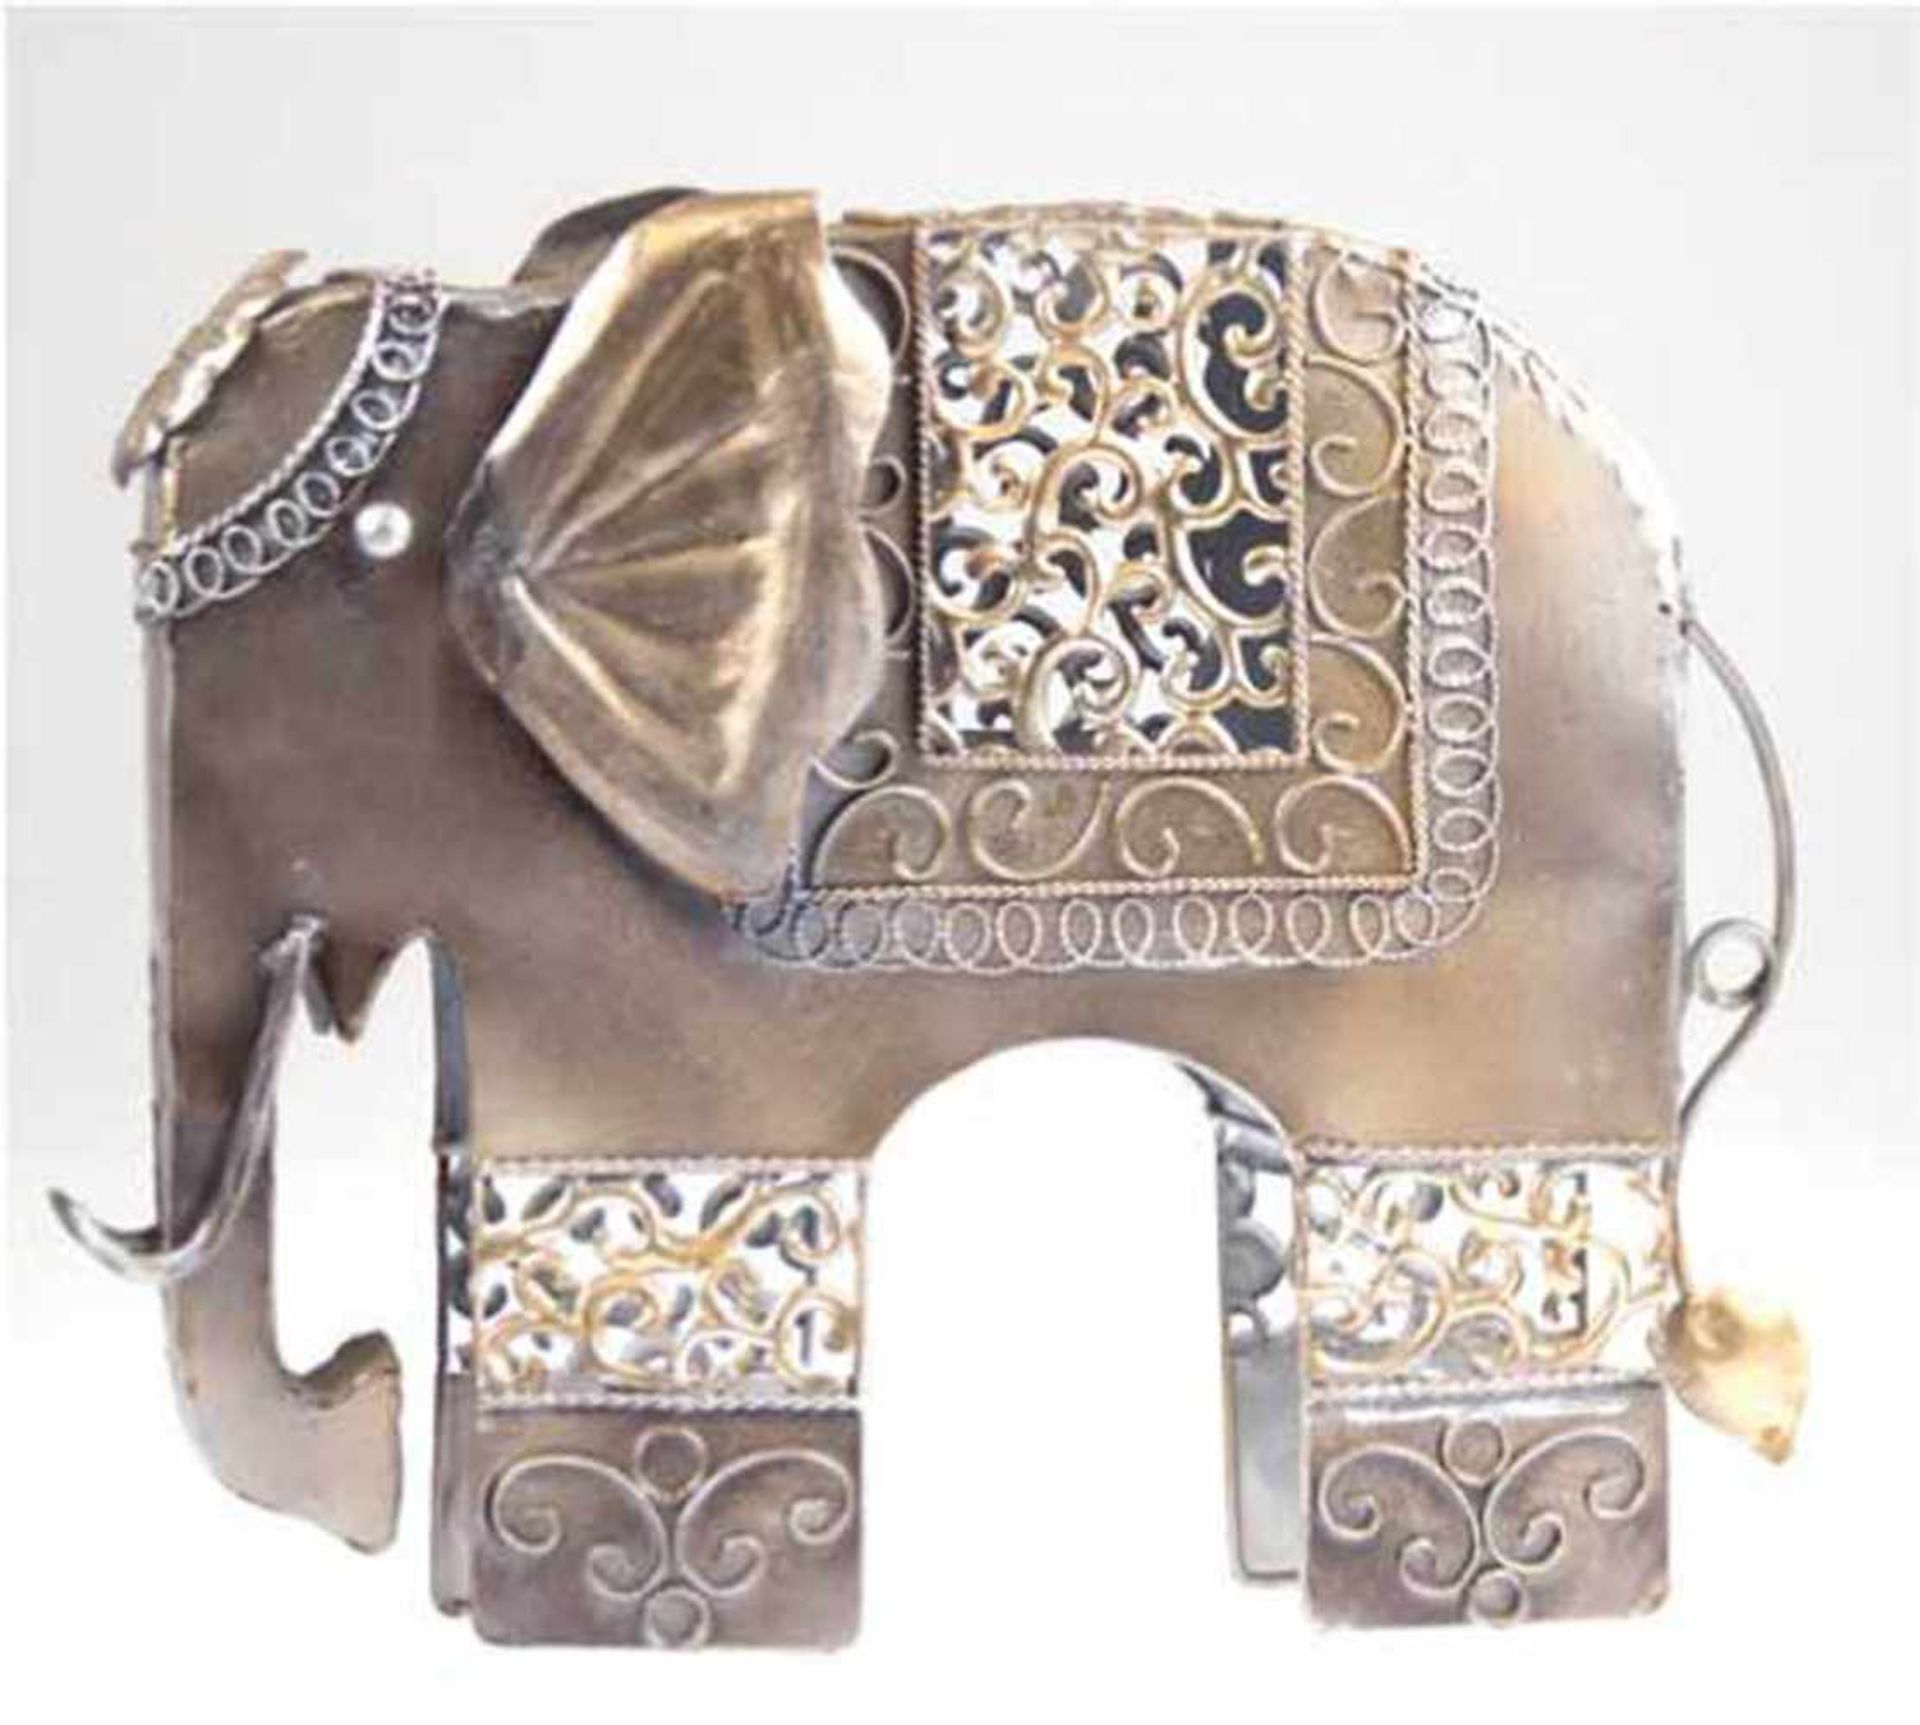 "Elefant", 20. Jh., Metall, mit gold u. silber farblich gestaltet, H. 34 cm, L. 42 cm